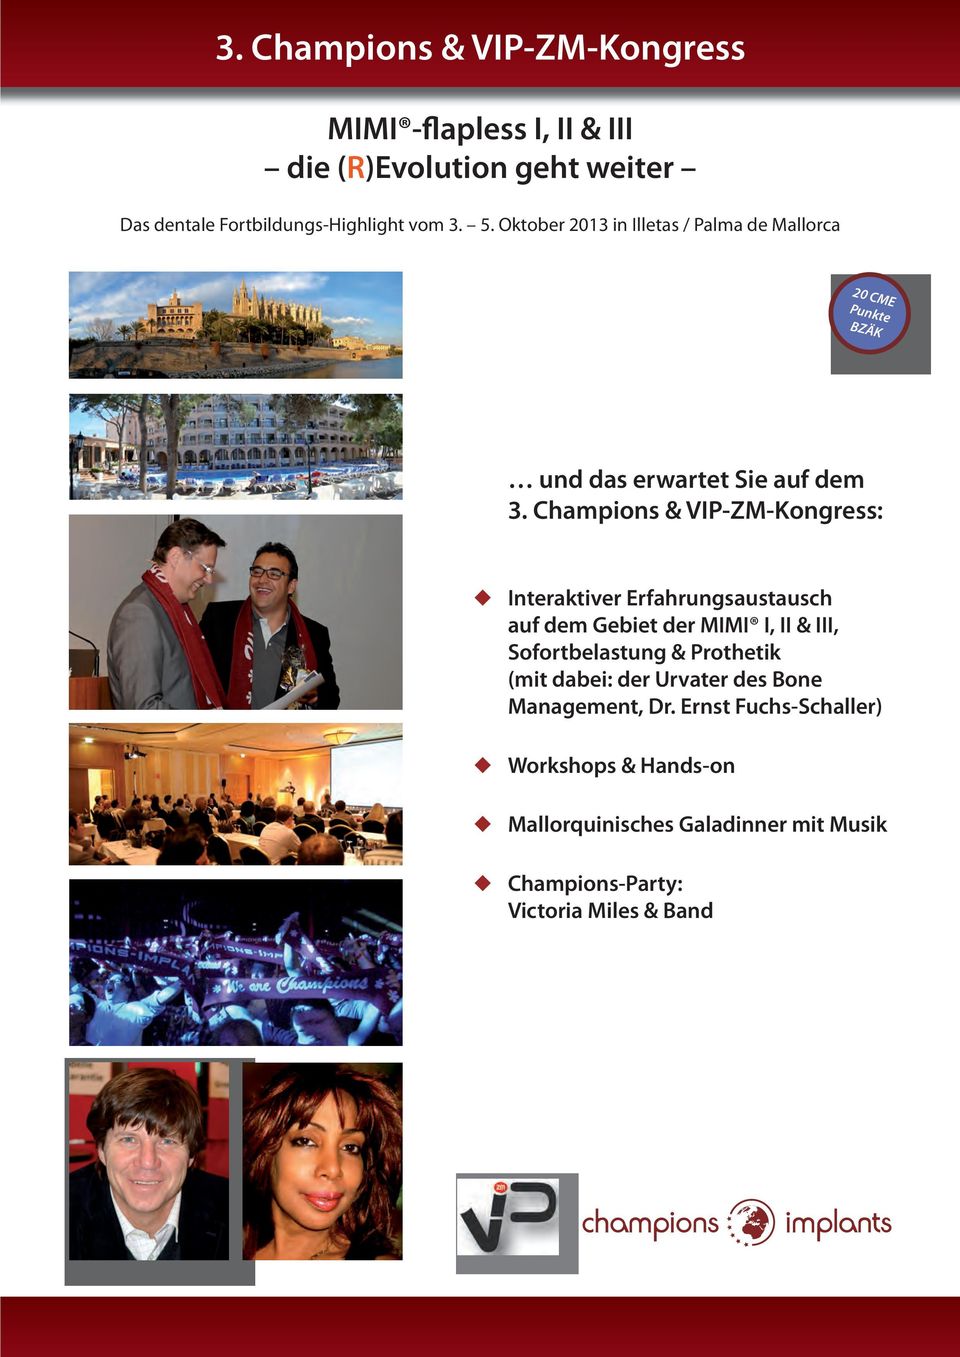 Champions & VIP-ZM-Kongress: Interaktiver Erfahrungsaustausch auf dem Gebiet der MIMI I, II & III, Sofortbelastung & Prothetik